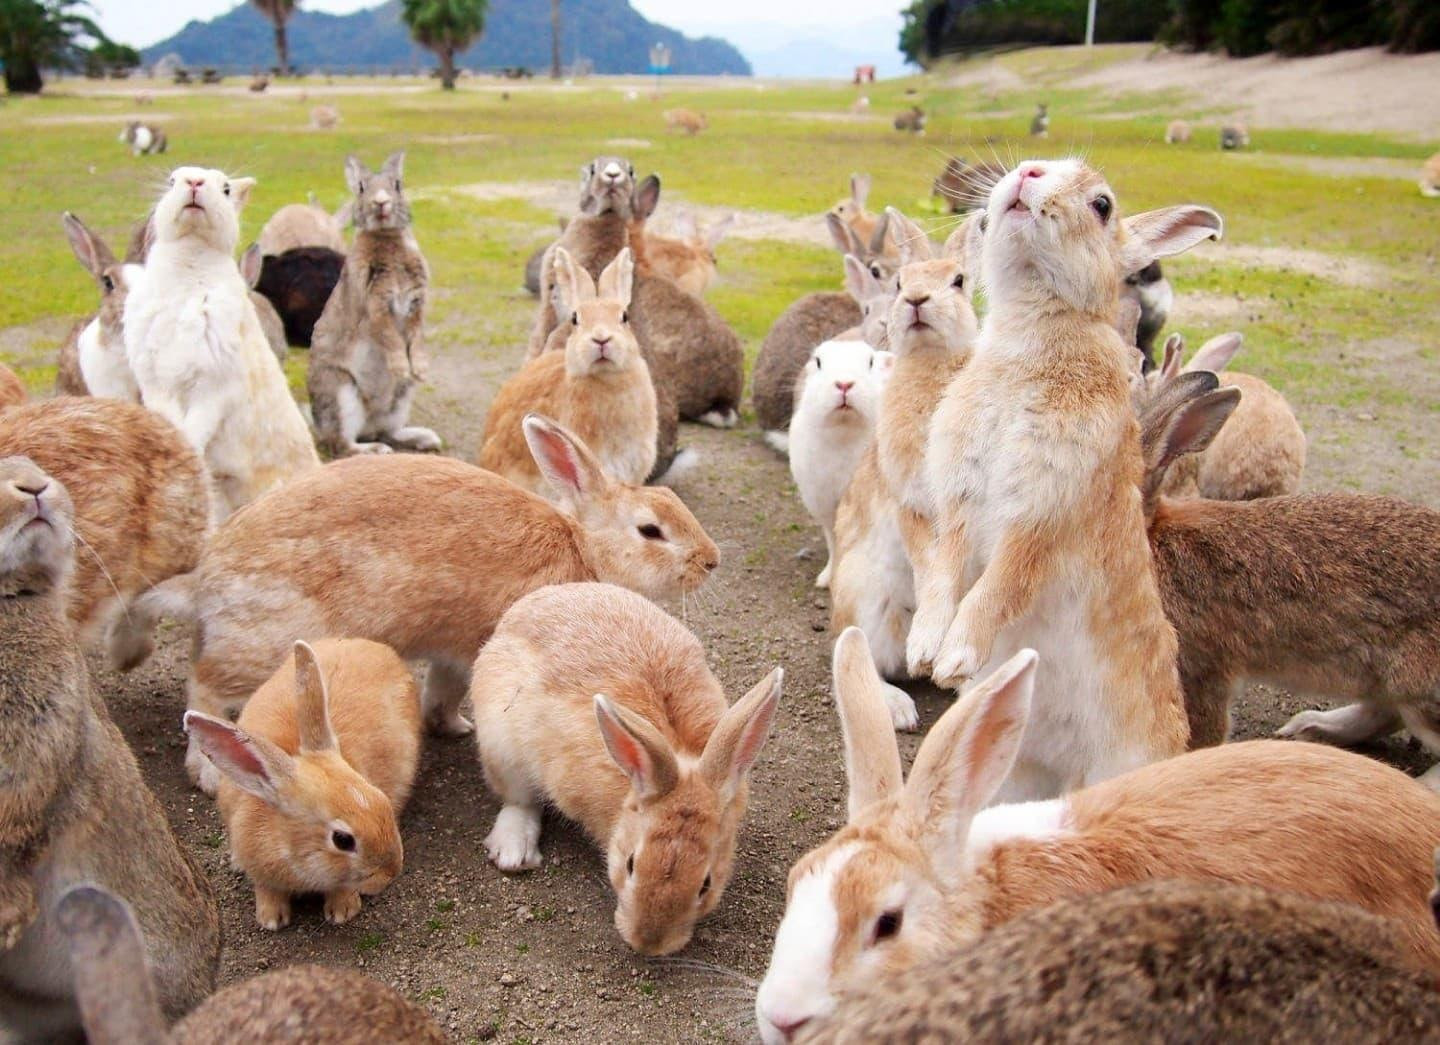 Dễ thương chịu không nổi với đảo thỏ ở Nhật Bản - 3